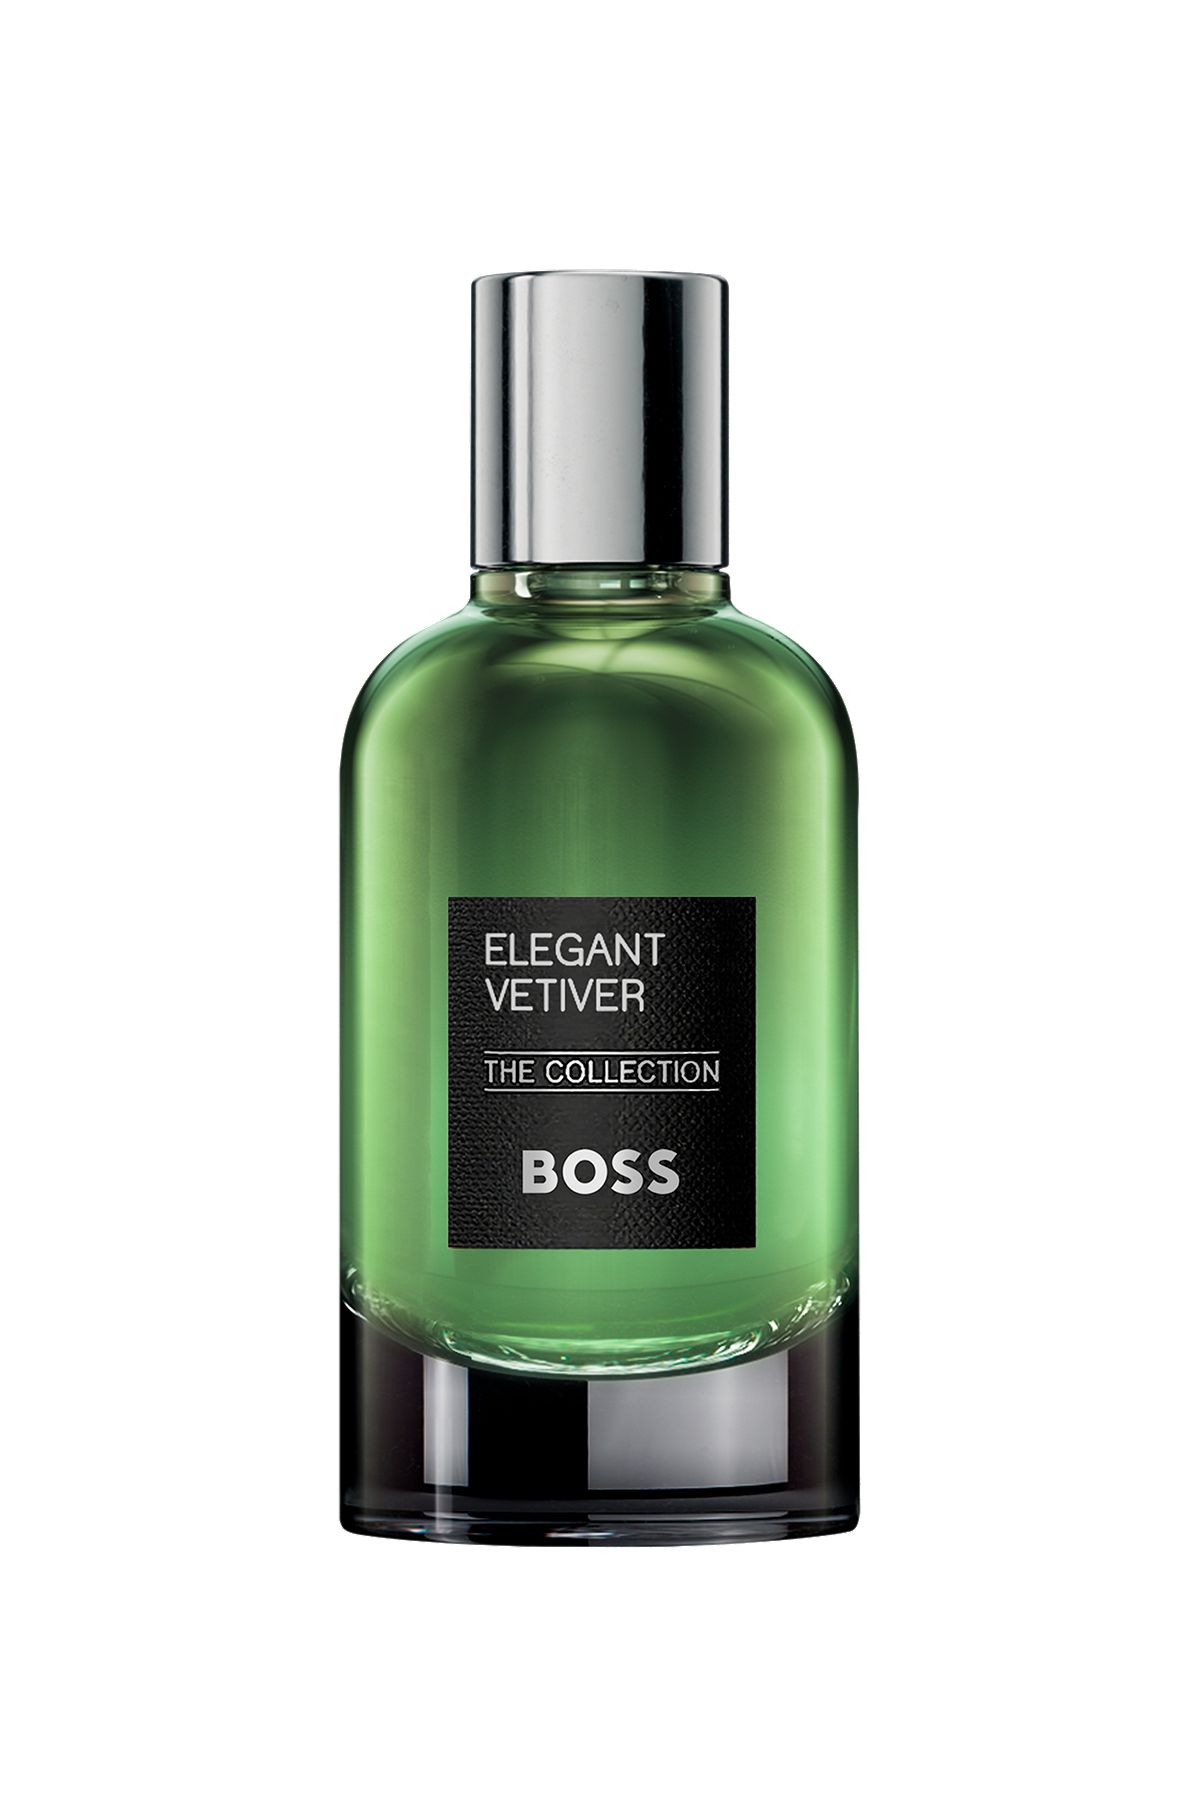 Eau de parfum BOSS The Collection Elegant Vetiver de 100 ml, Assorted-Pre-Pack